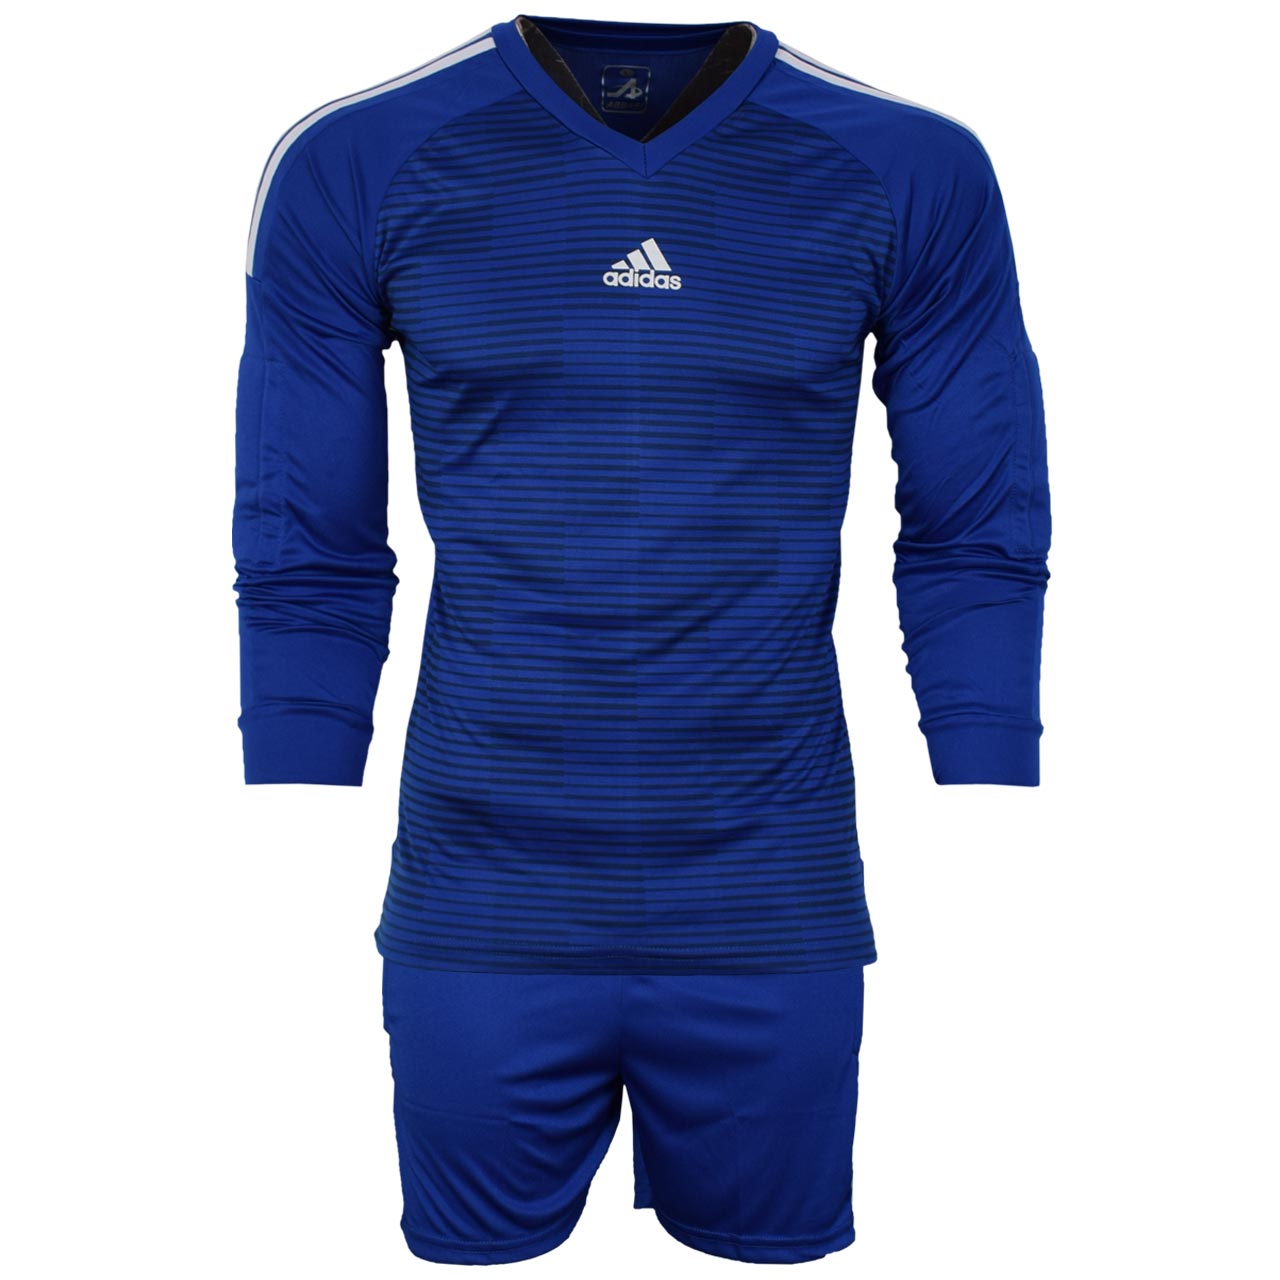 ست پیراهن و شورت ورزشی مردانه طرح دروازبانی فوتبال مدل A01 رنگ آبی                     غیر اصل